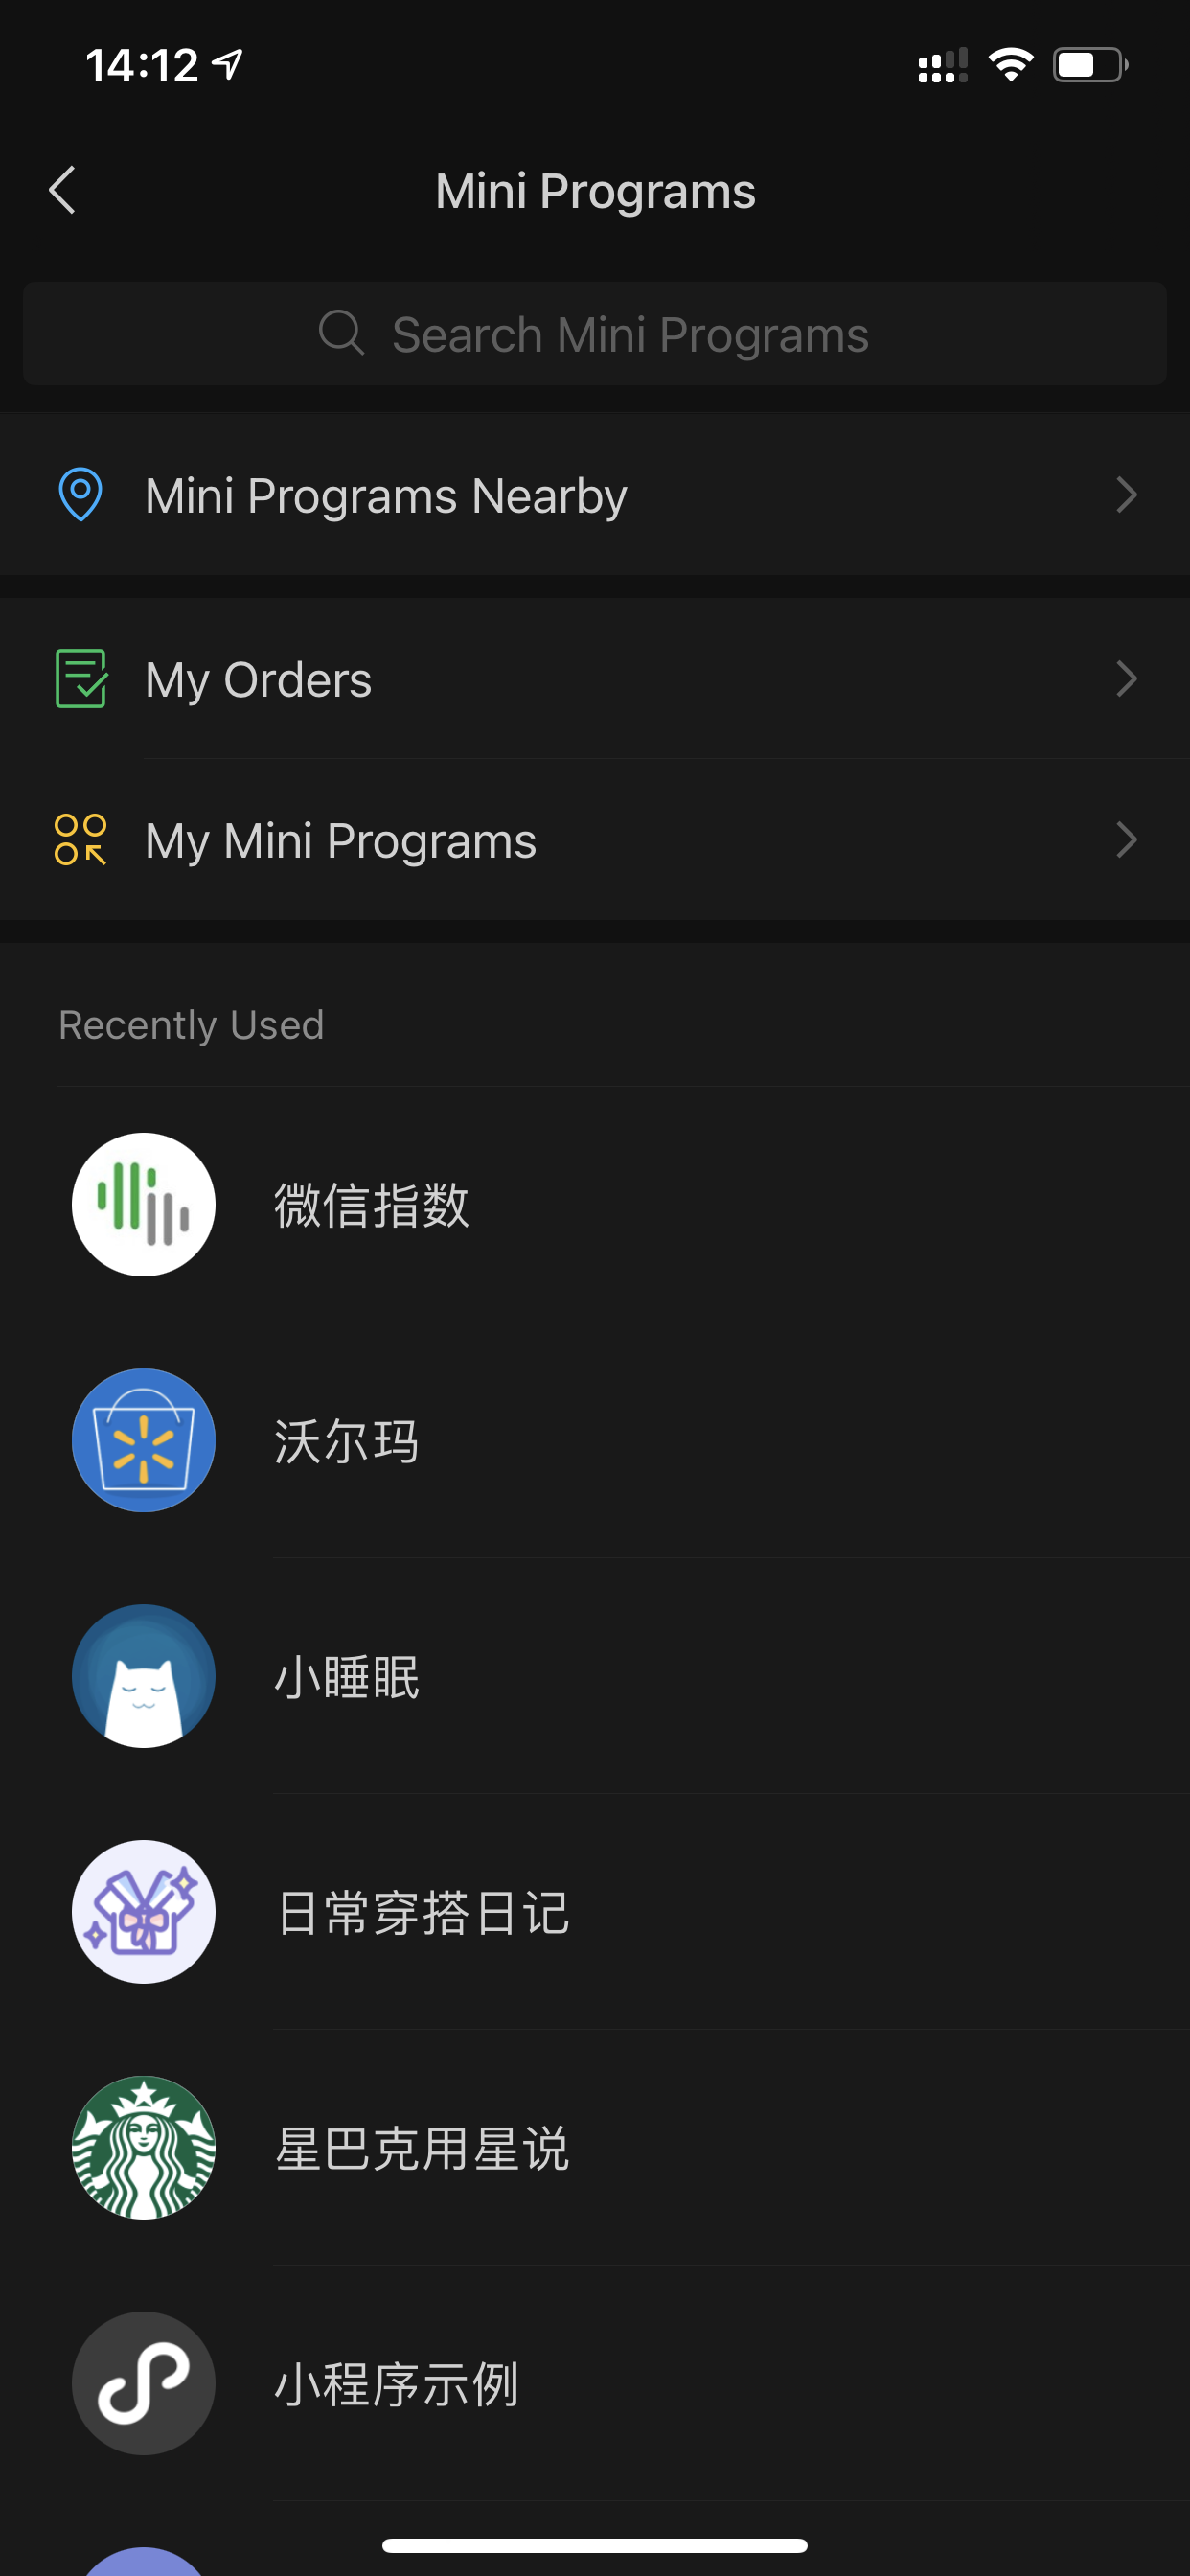 רשימה של אפליקציות מיני שהושקו לאחרונה באפליקציית העל של WeChat.